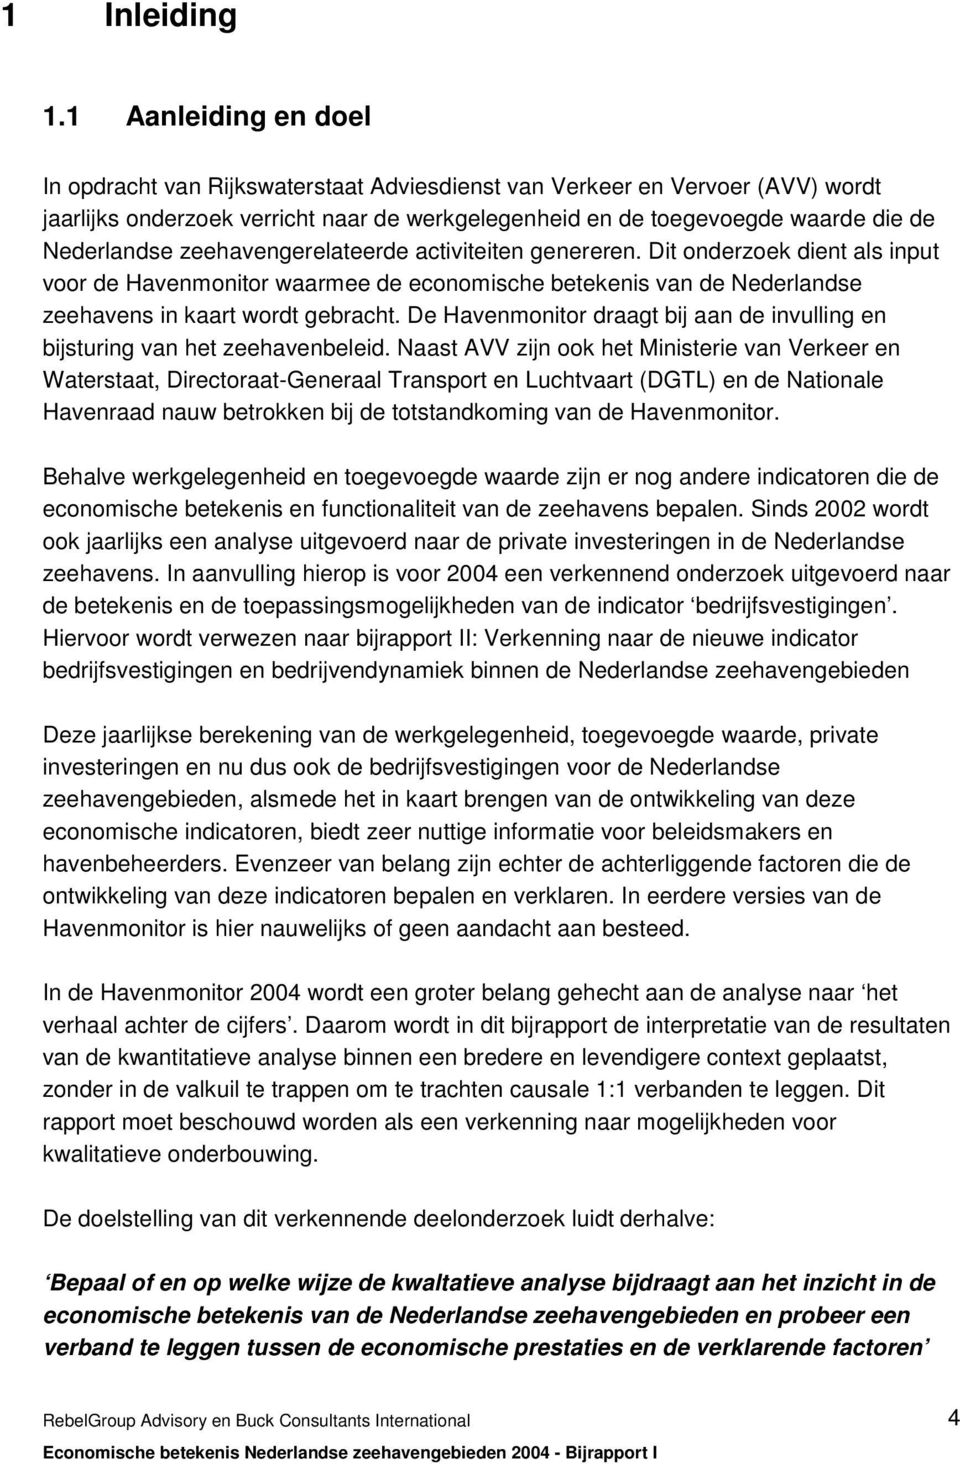 zeehavengerelateerde activiteiten genereren. Dit onderzoek dient als input voor de Havenmonitor waarmee de economische betekenis van de Nederlandse zeehavens in kaart wordt gebracht.